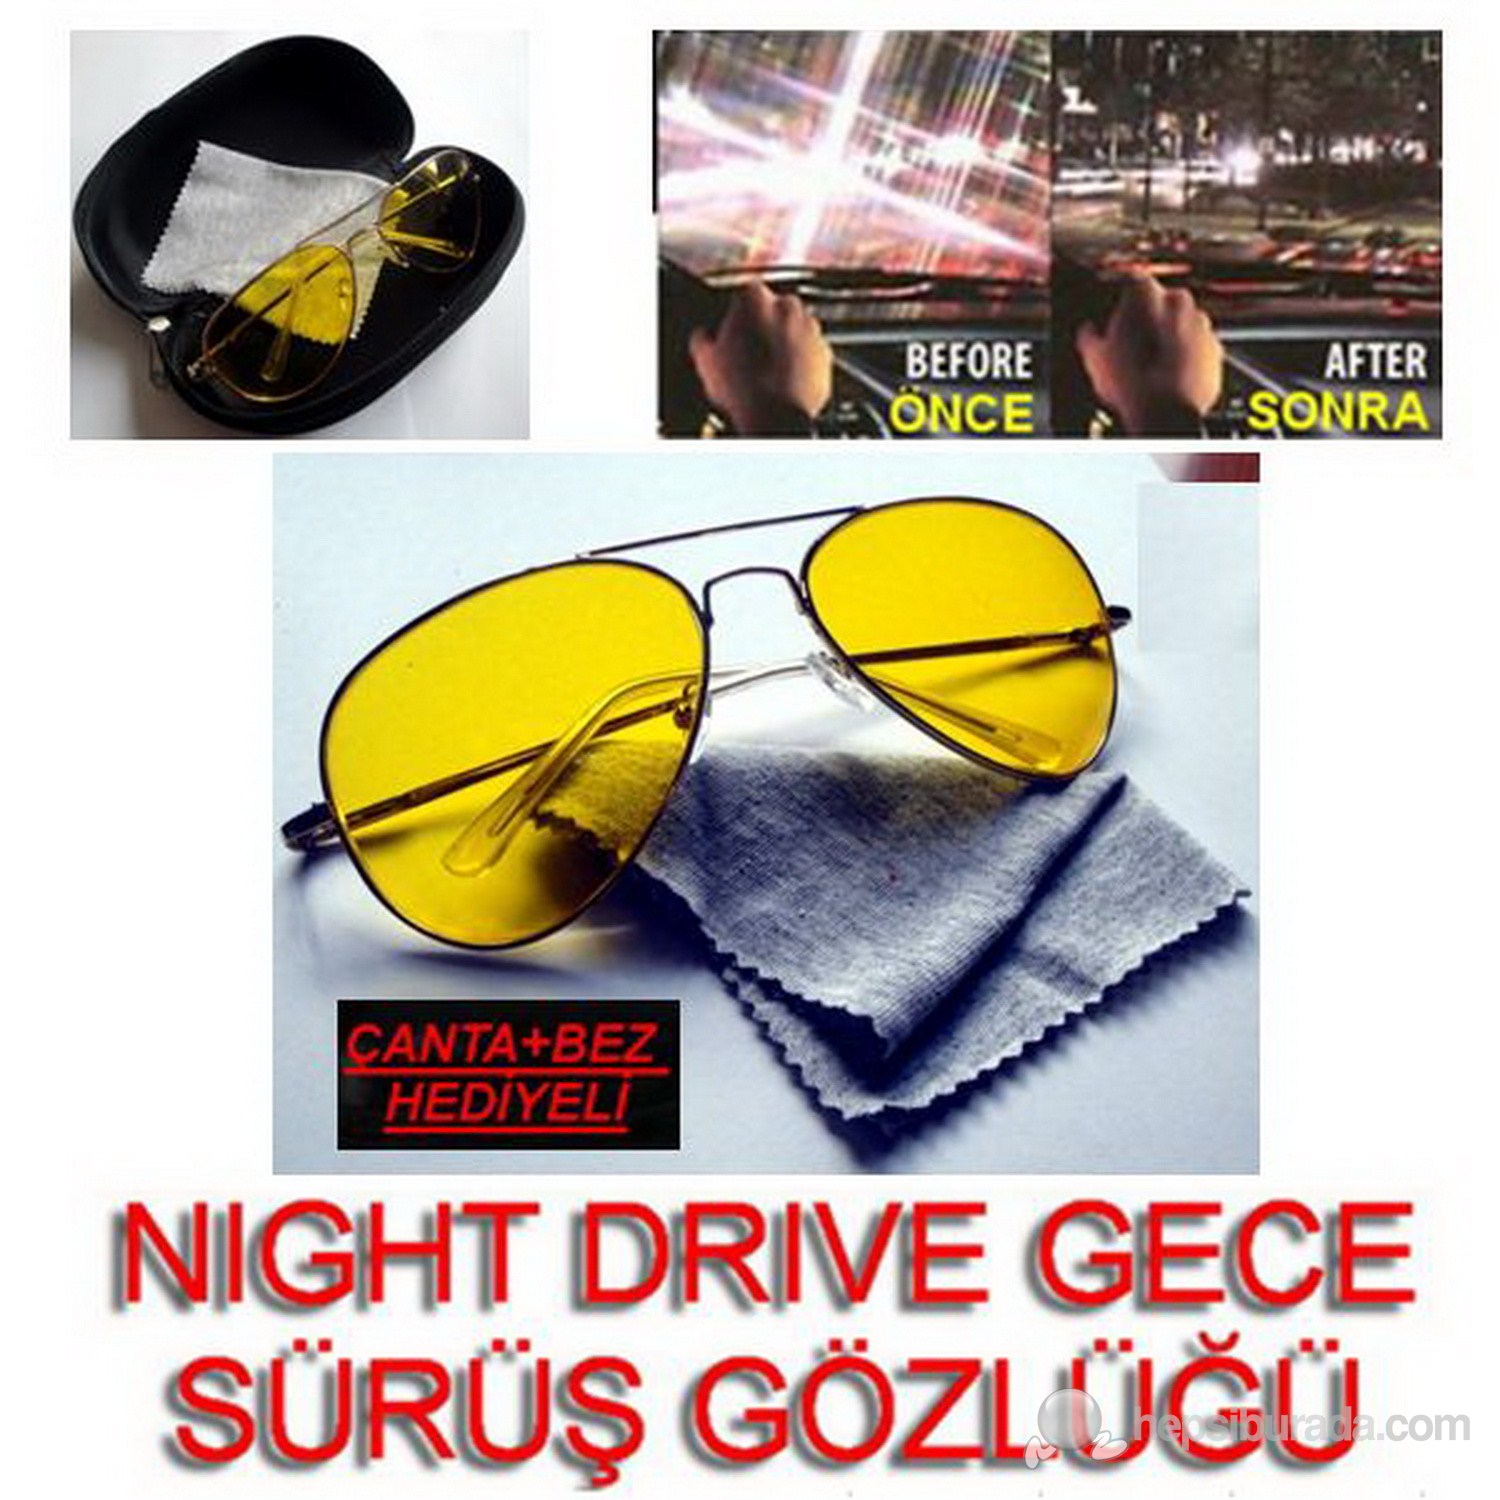 Night Drive Metal Çerçeve Gece Sürüş Gözlüğü Çanta Ve Bez Hediyeli 9712002